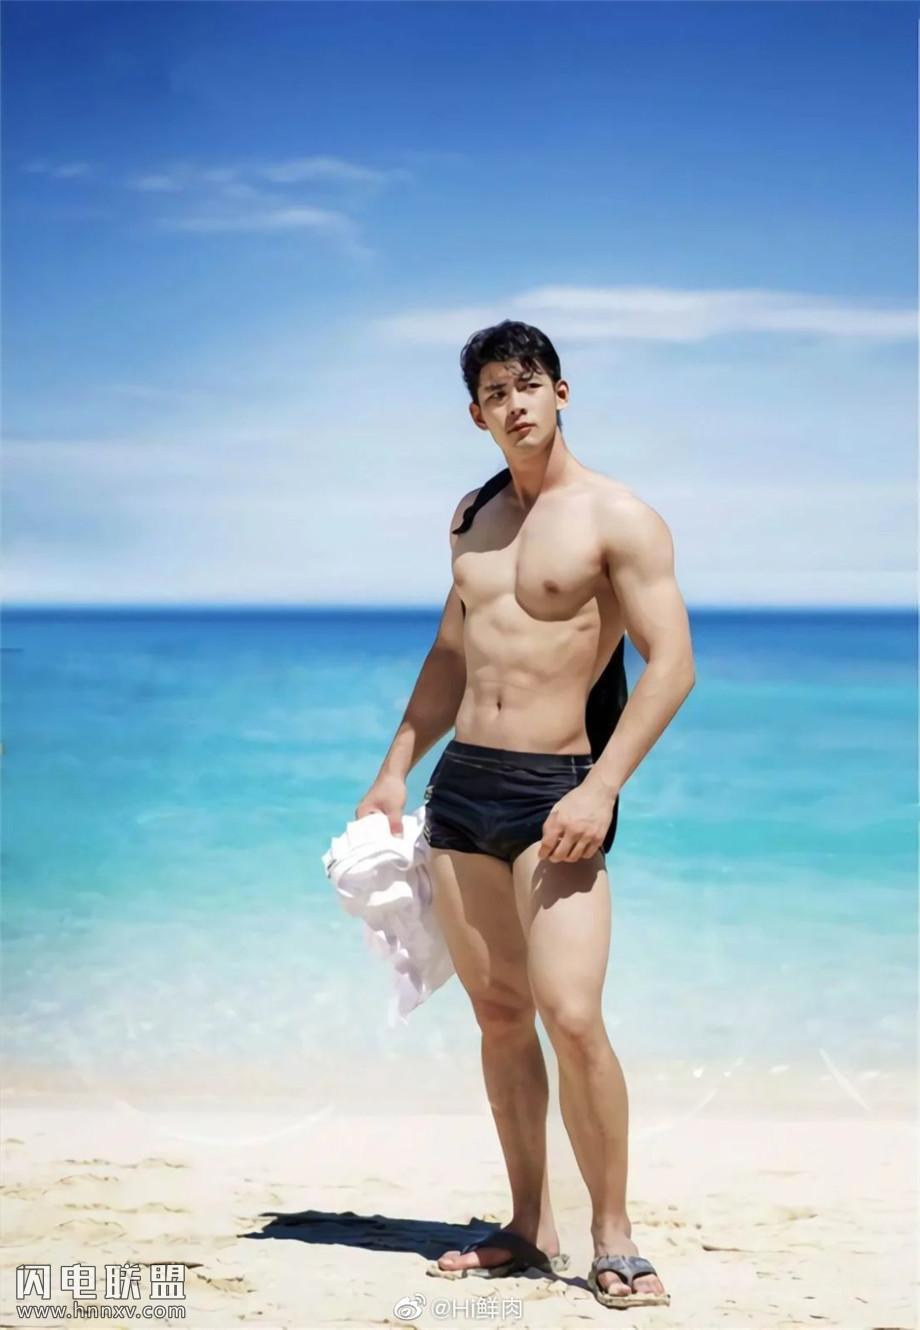 95后中国性感肌肉男模海边写真图片第1张